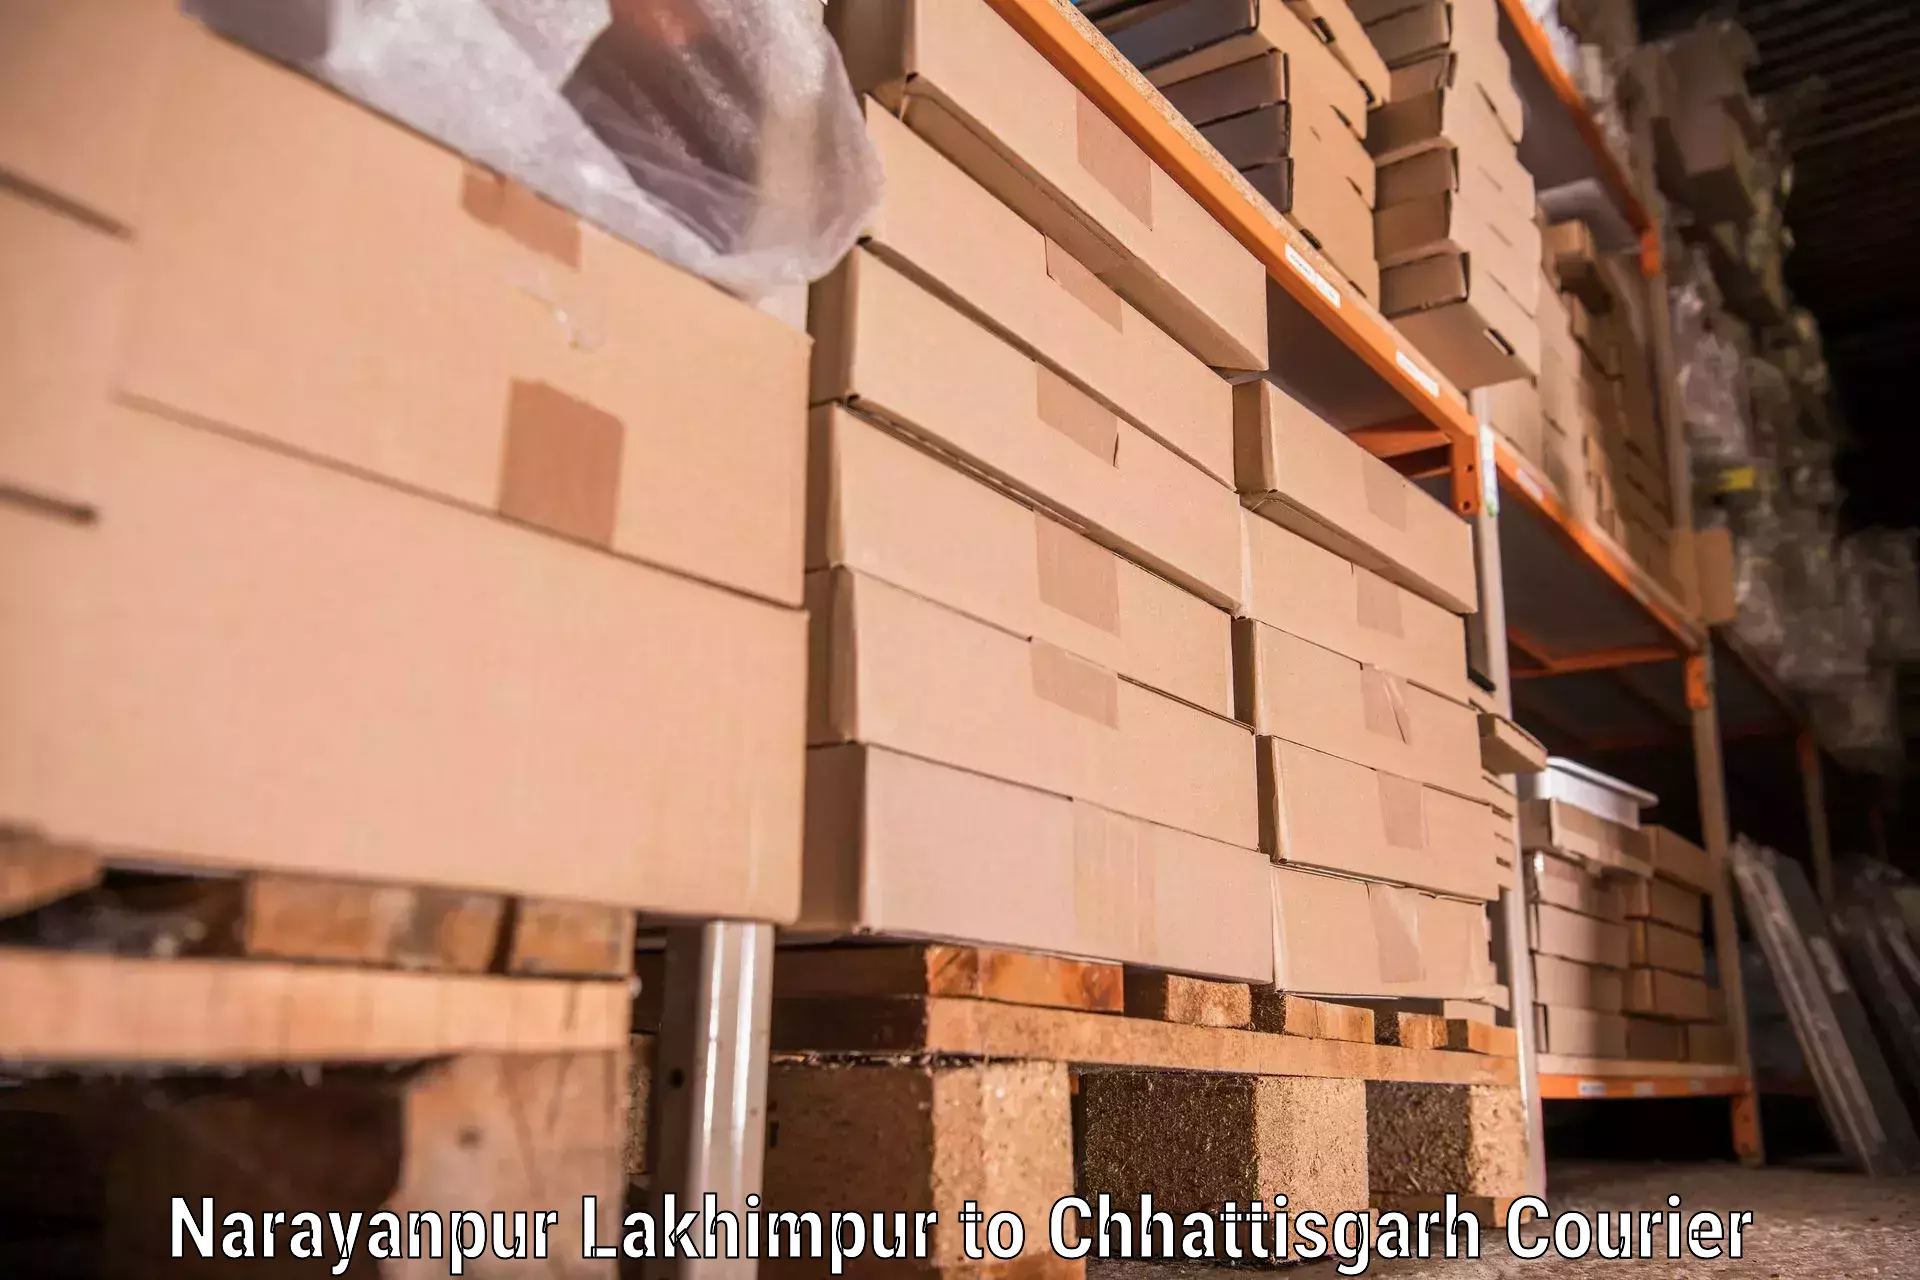 Efficient moving services Narayanpur Lakhimpur to Pakhanjur